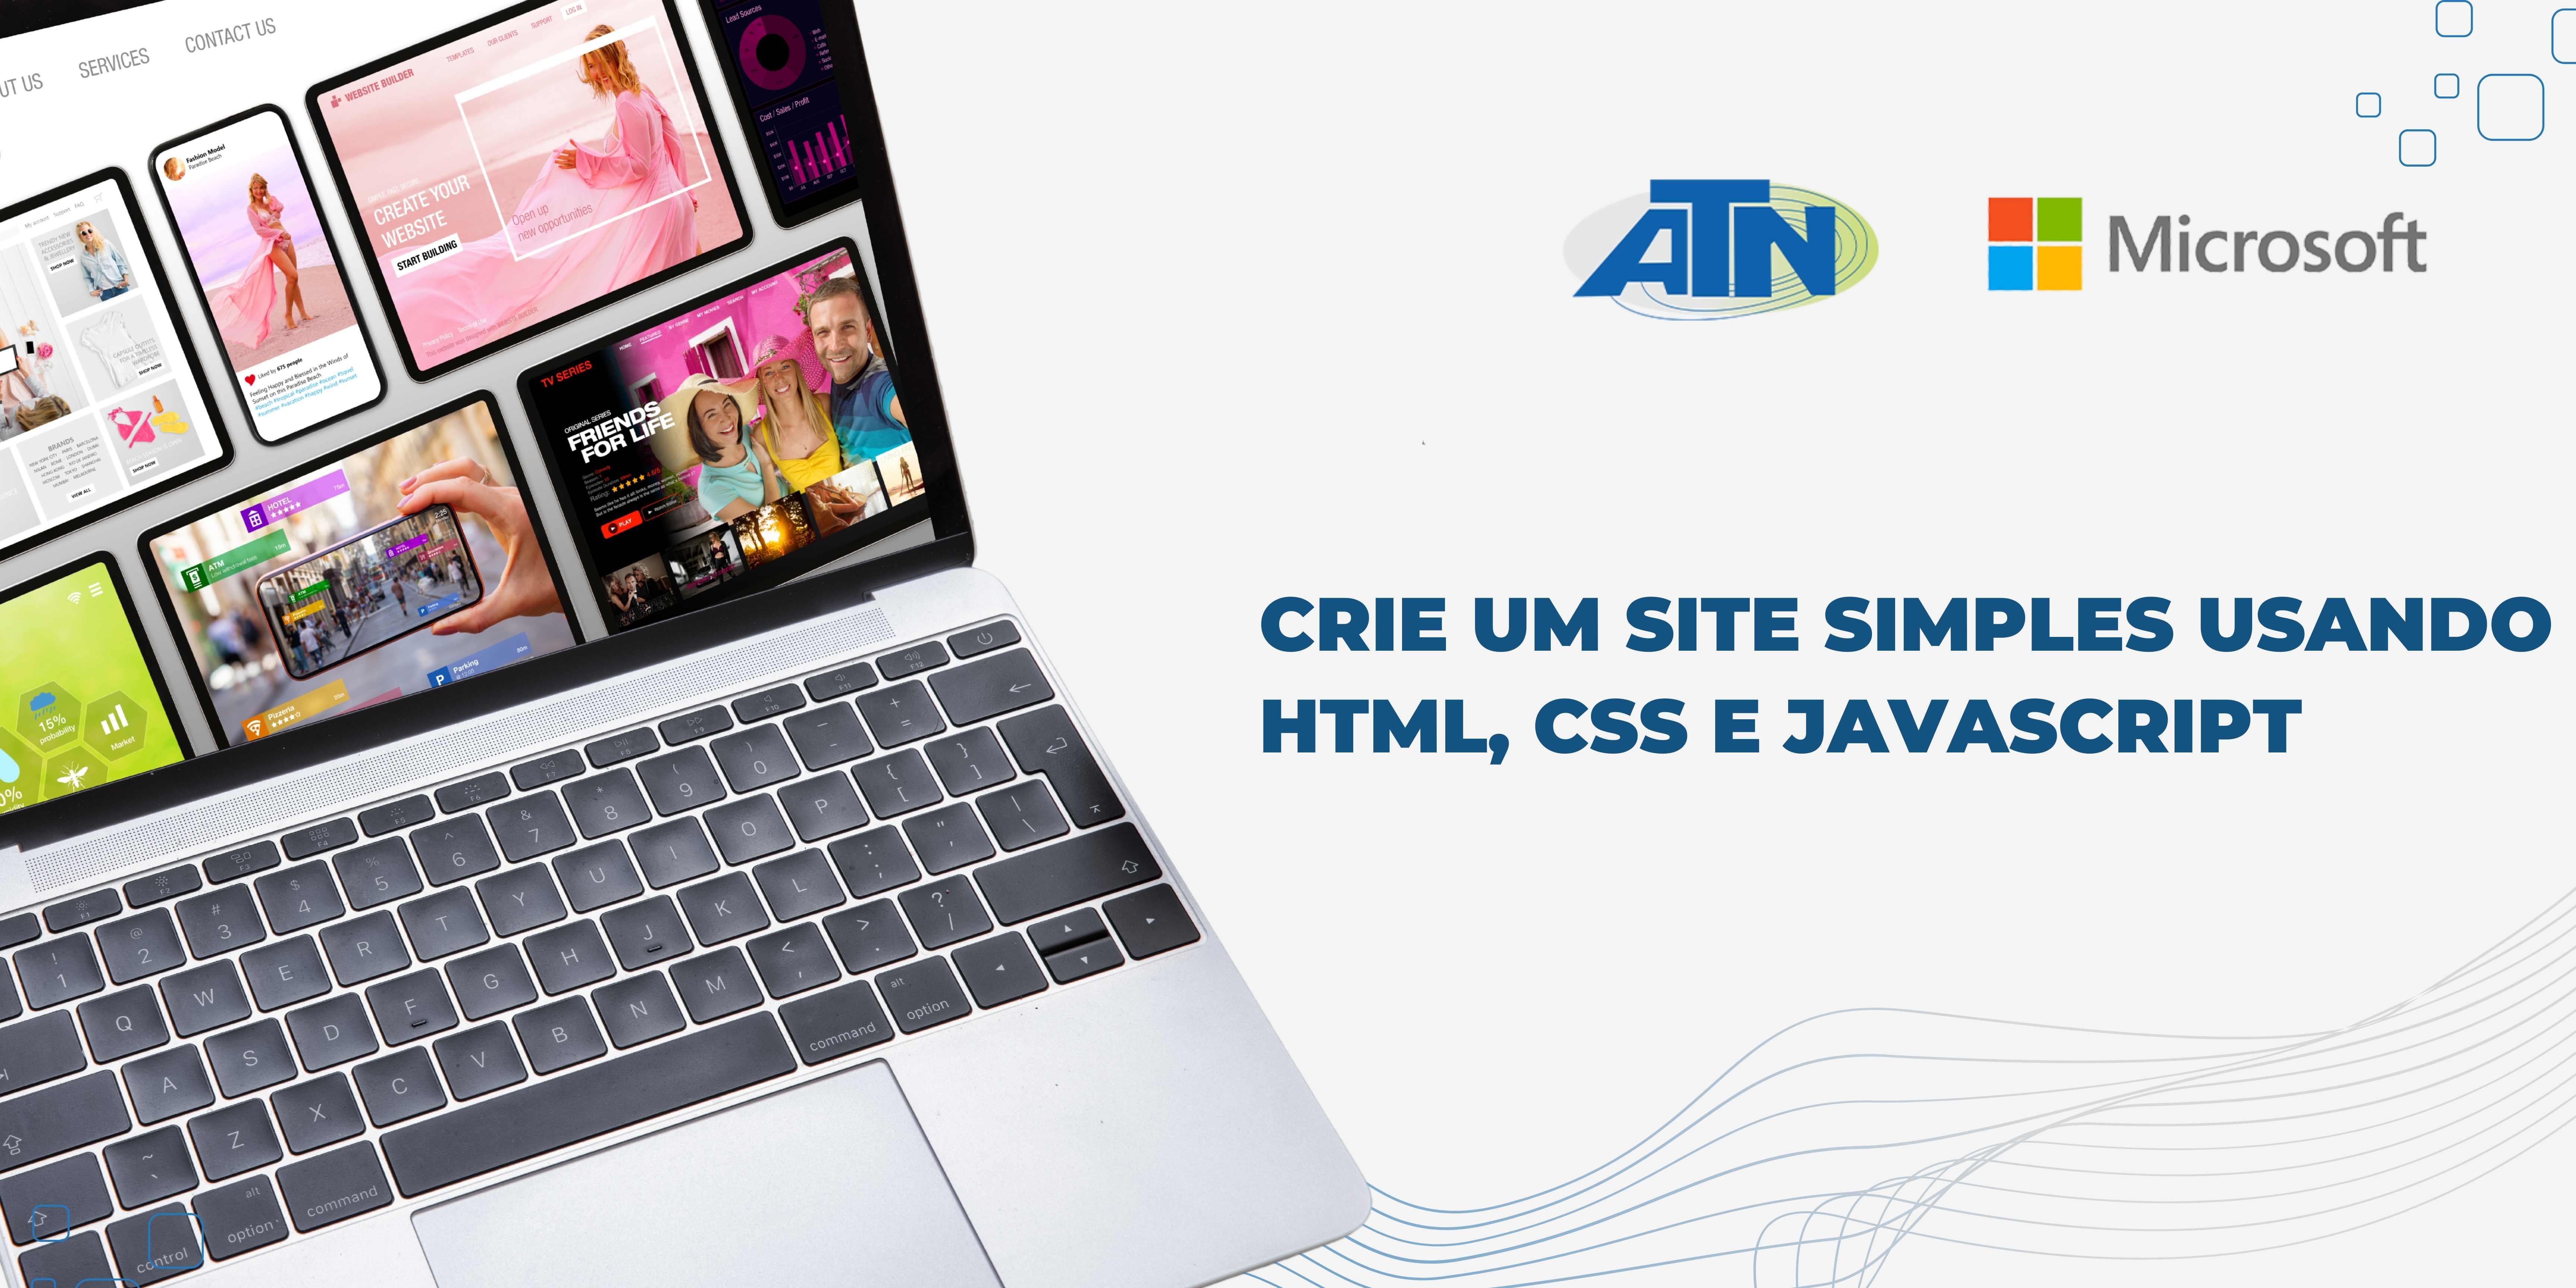 Course Image Crie um site simples usando HTML, CSS e JavaScript